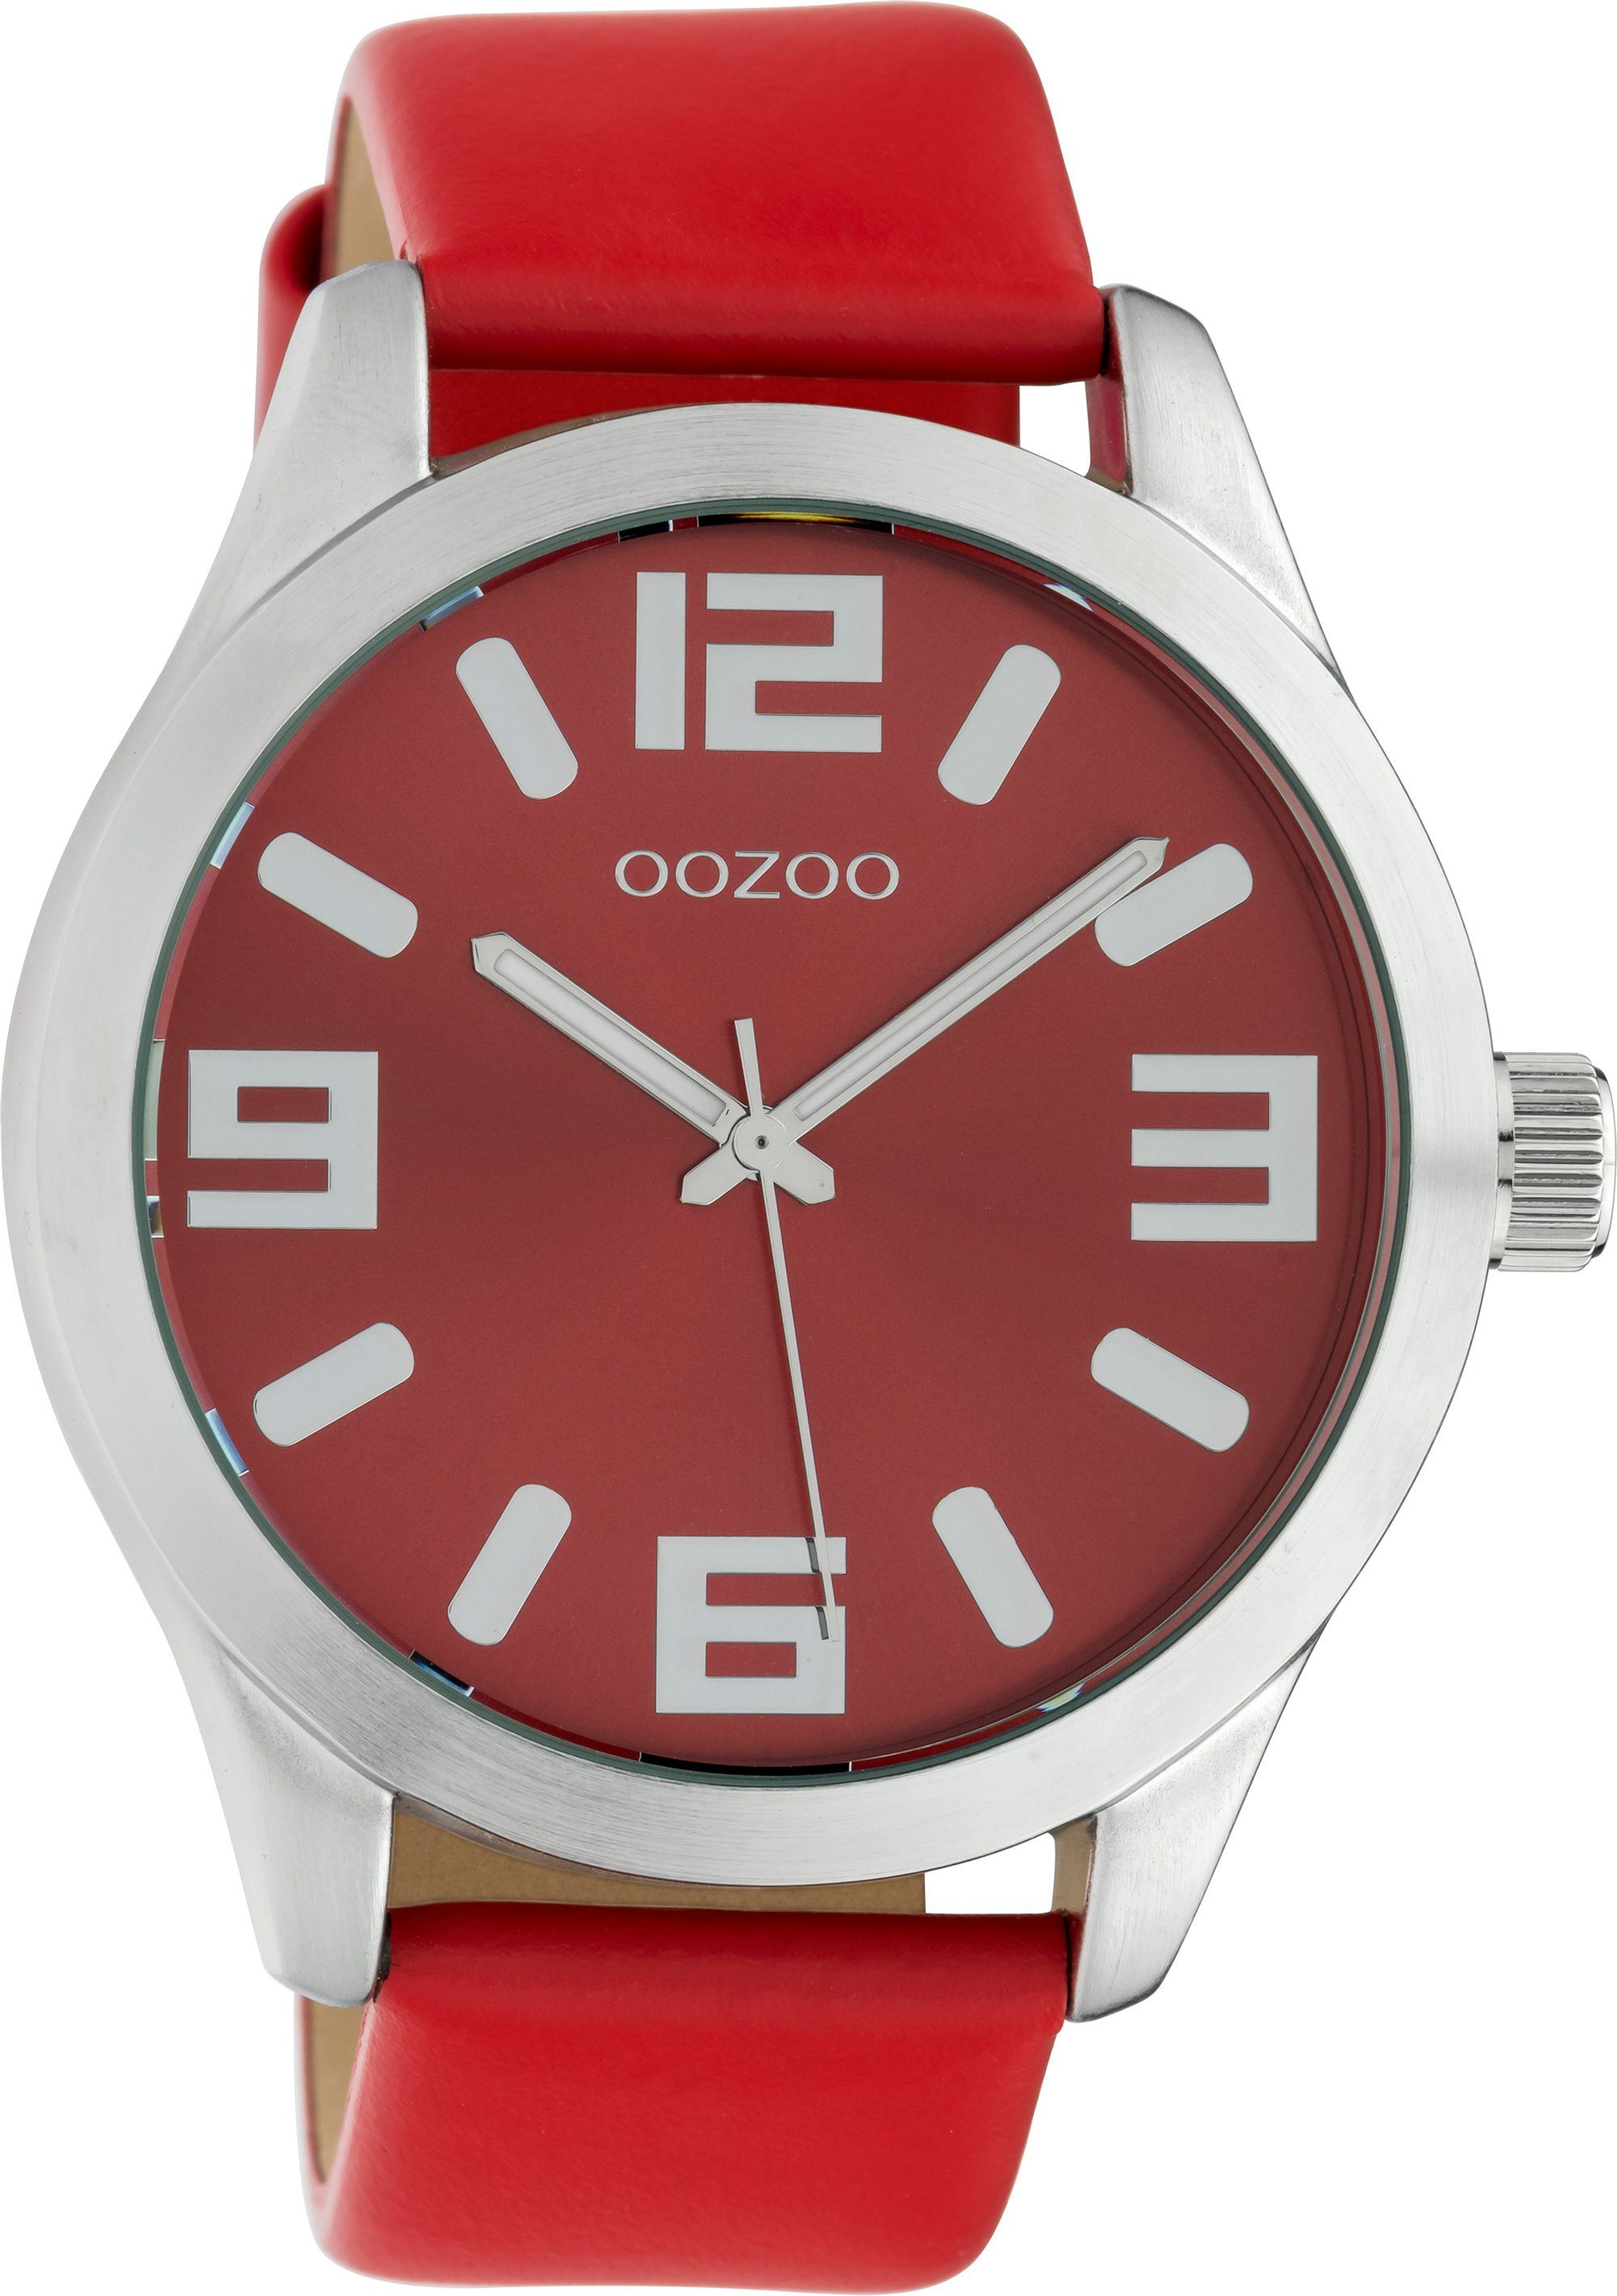 OOZOO Quarzuhr C10237, Metallgehäuse, Ø ca. 46 mm